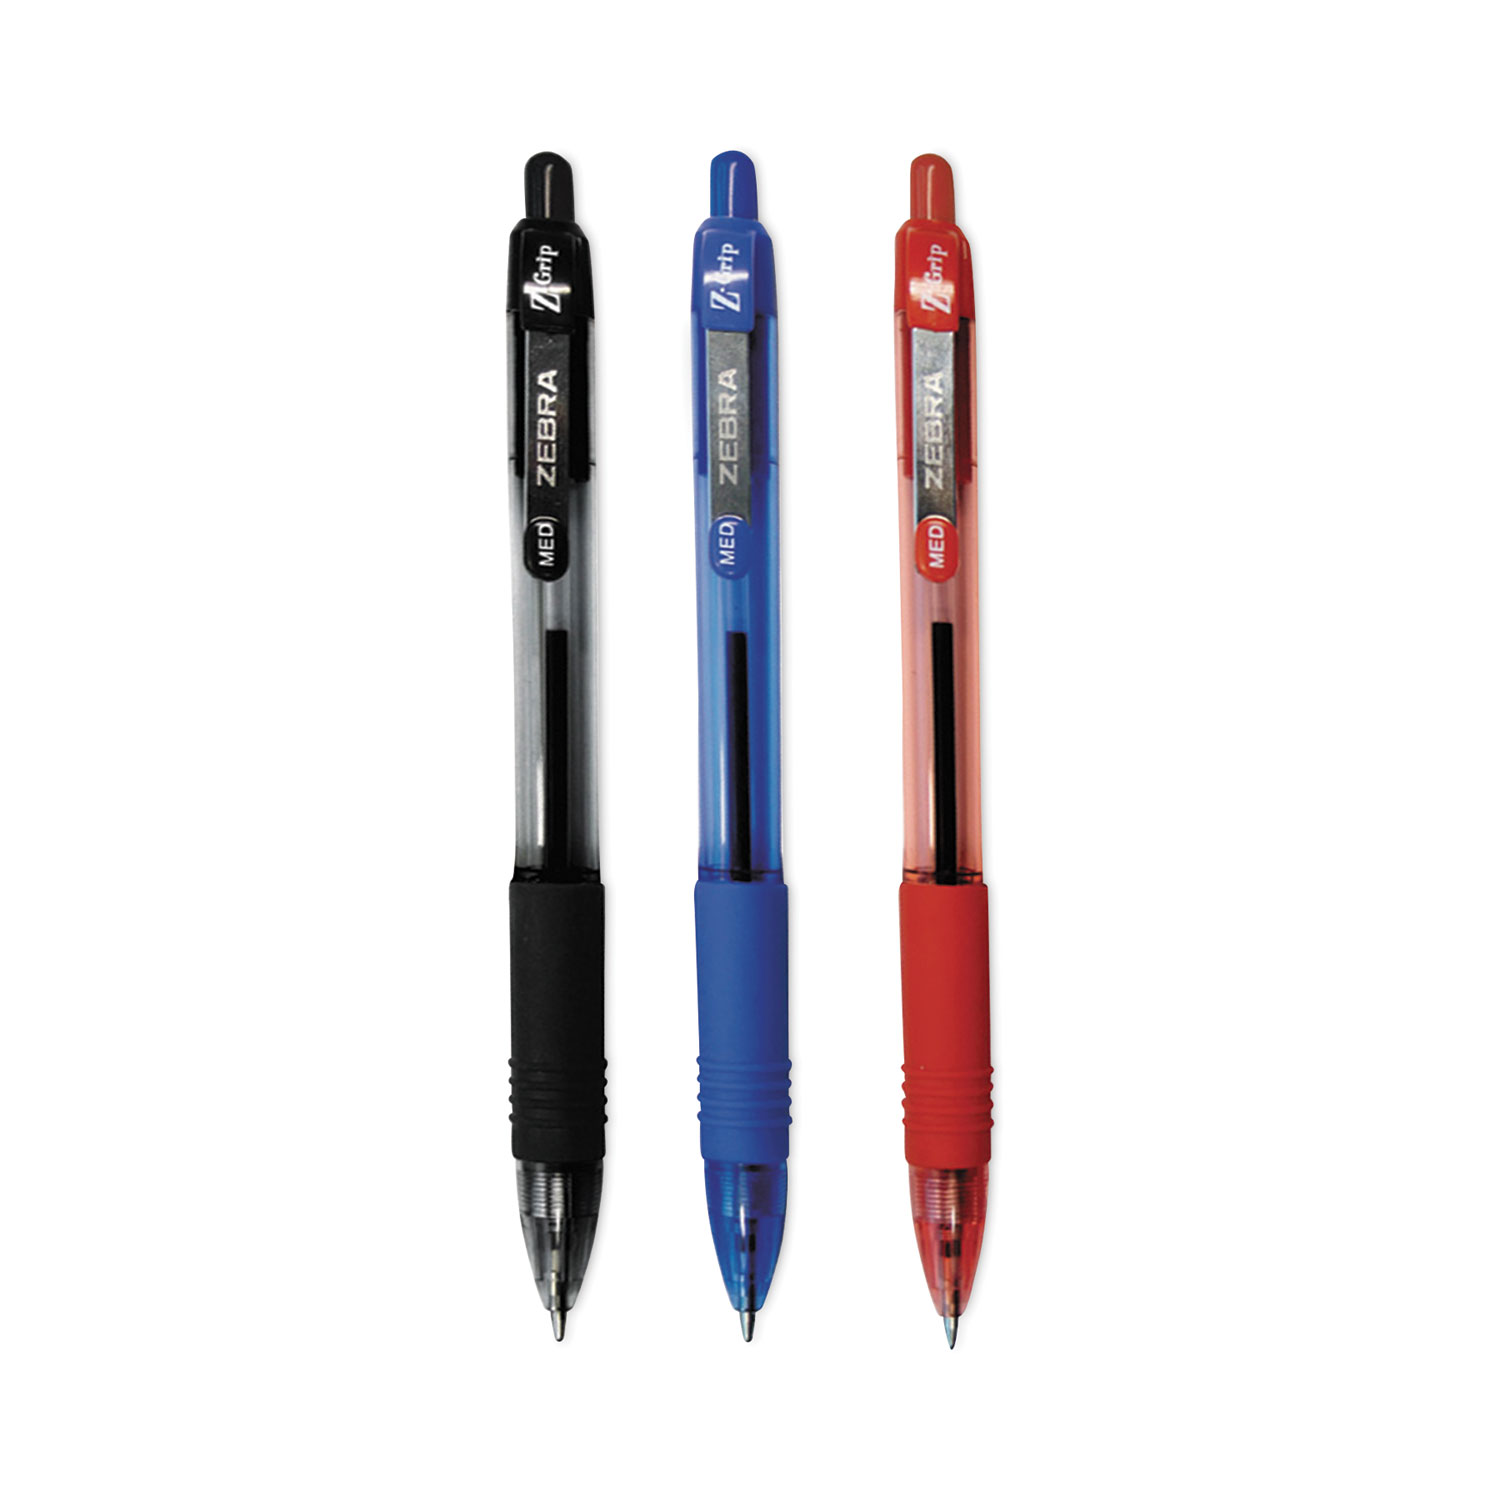 Zebra Pens Bulk Pack of 48 Ink Pens, Z-Grip Retractable Ballpoint Pens Medium Point 1.0 mm, 24 Black Pens & 24 Blue Pens Combo Pack